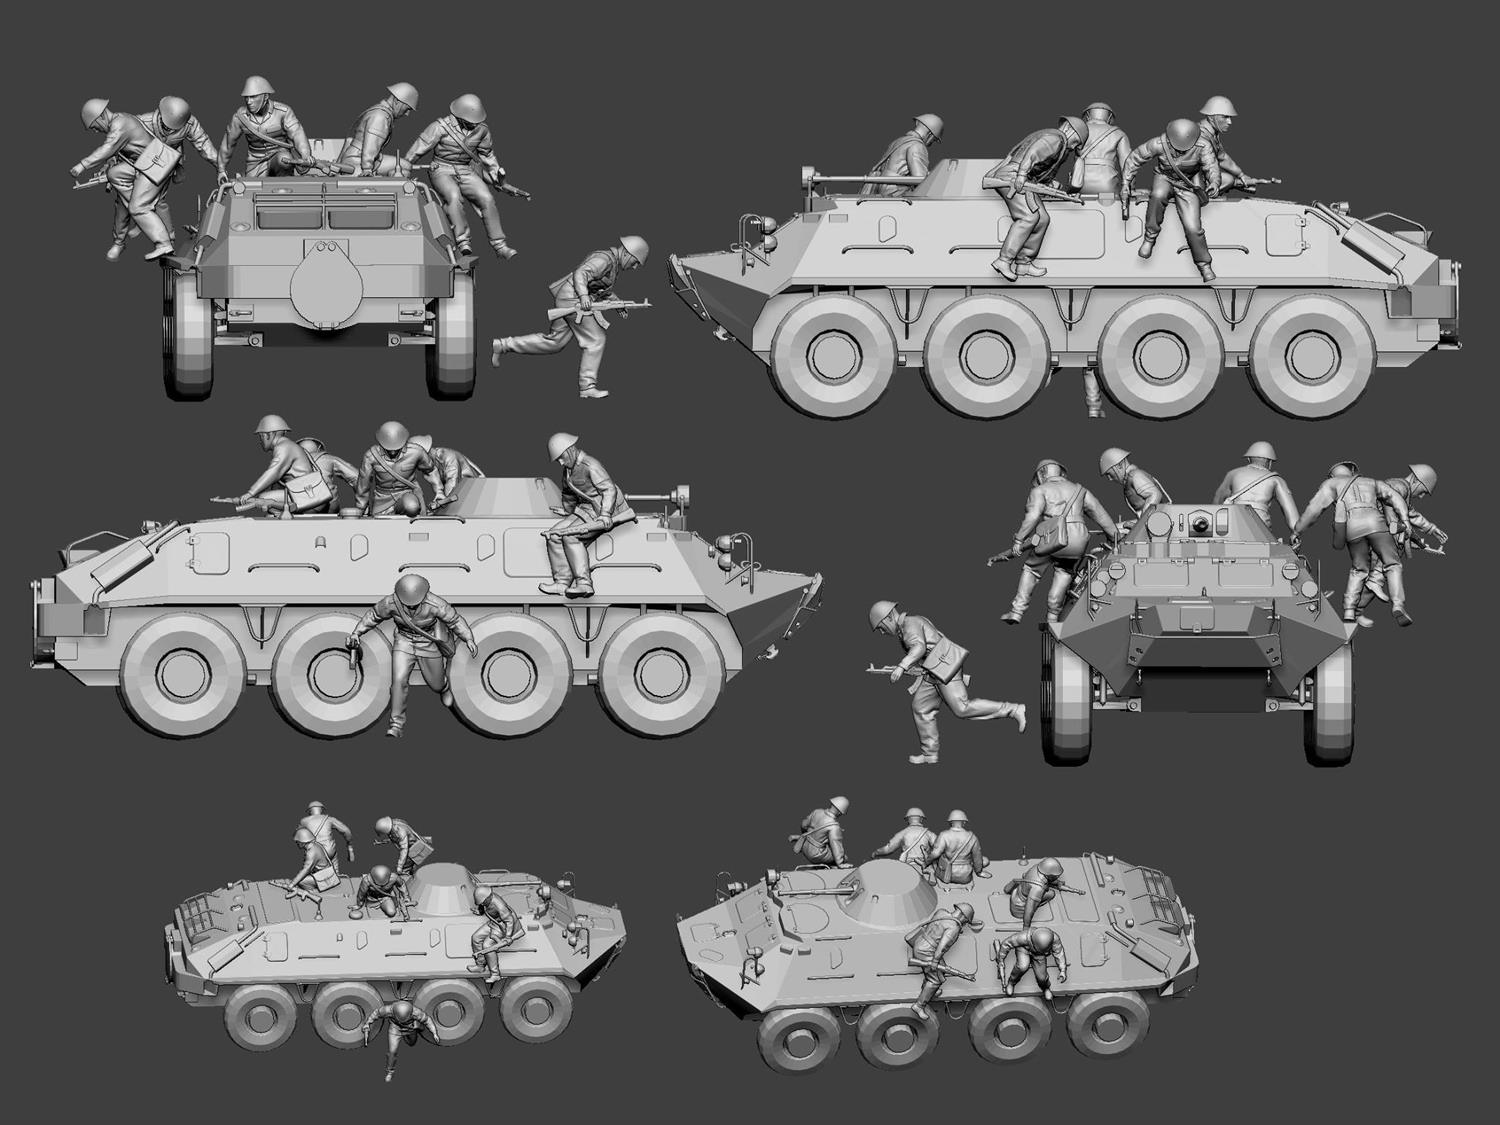 NVA motorziden infantry - leaving BTR